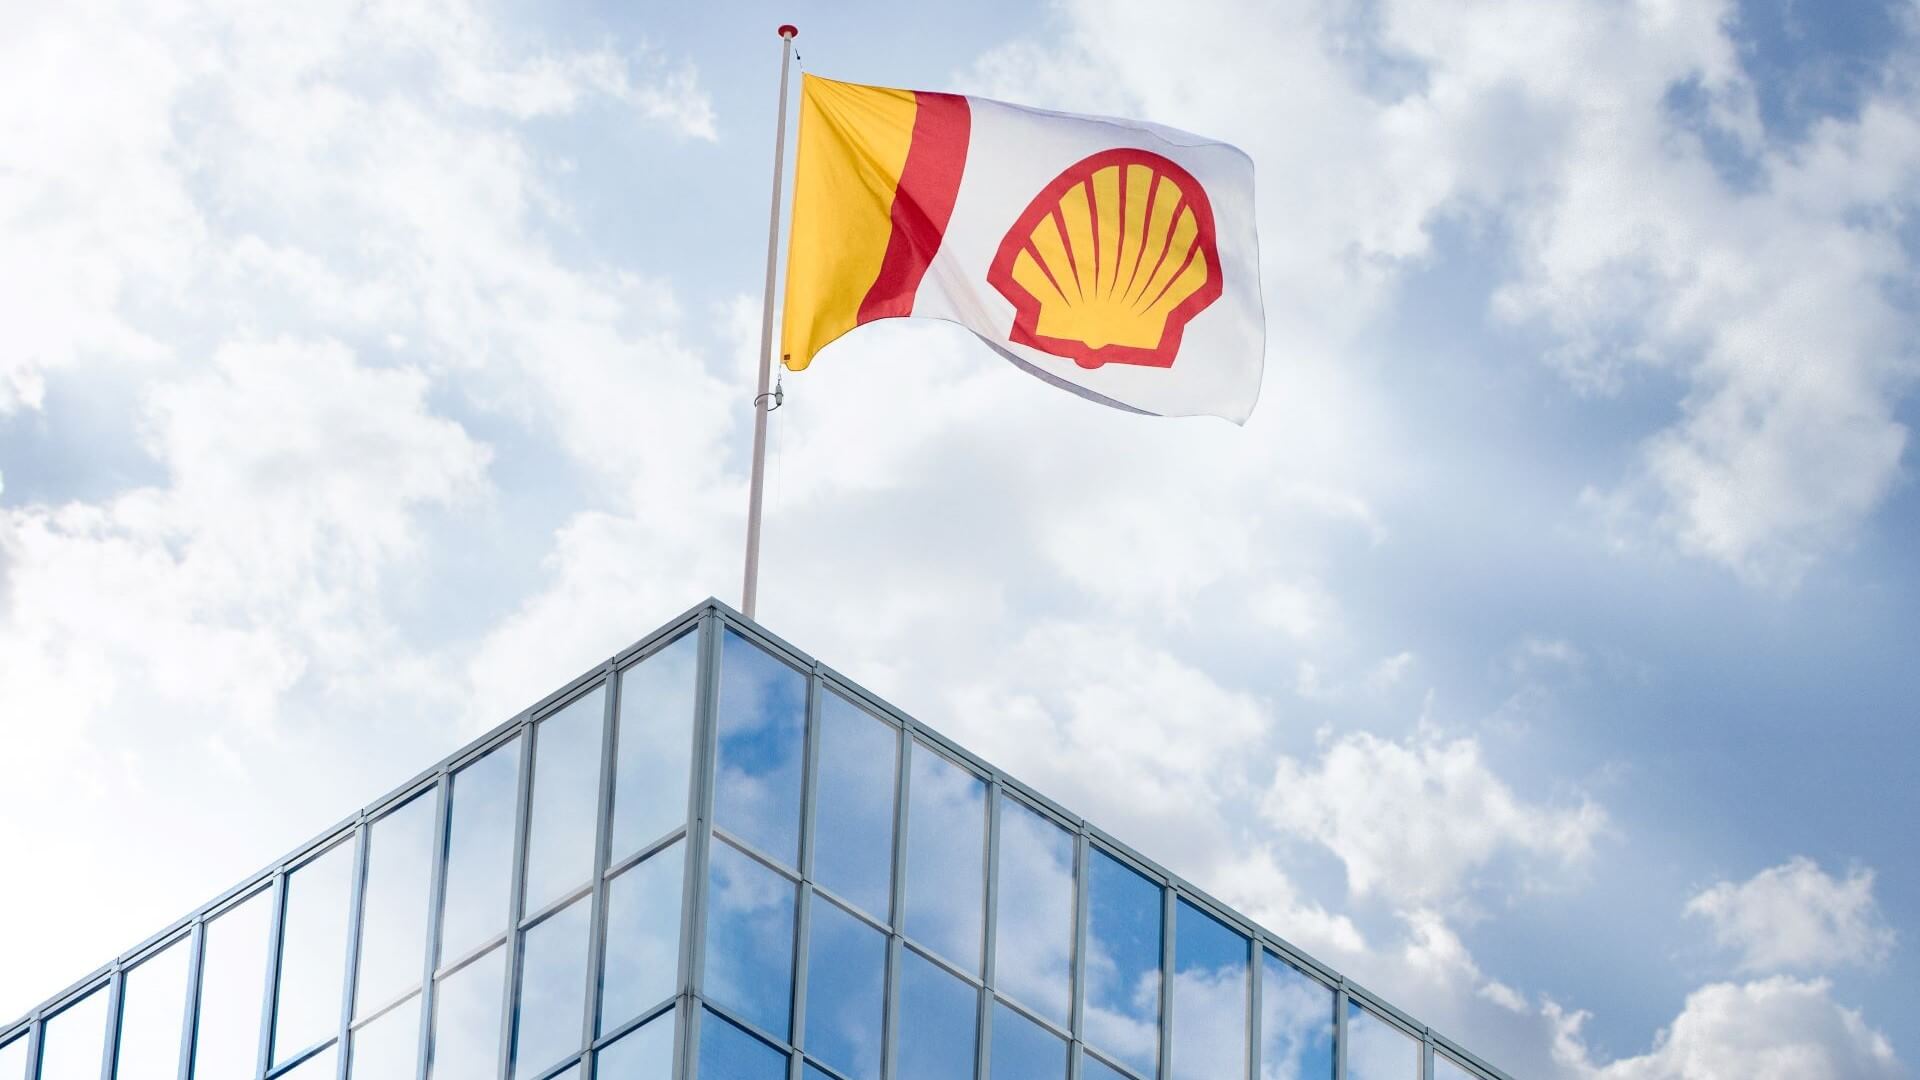 Shell logo on flag flying over building